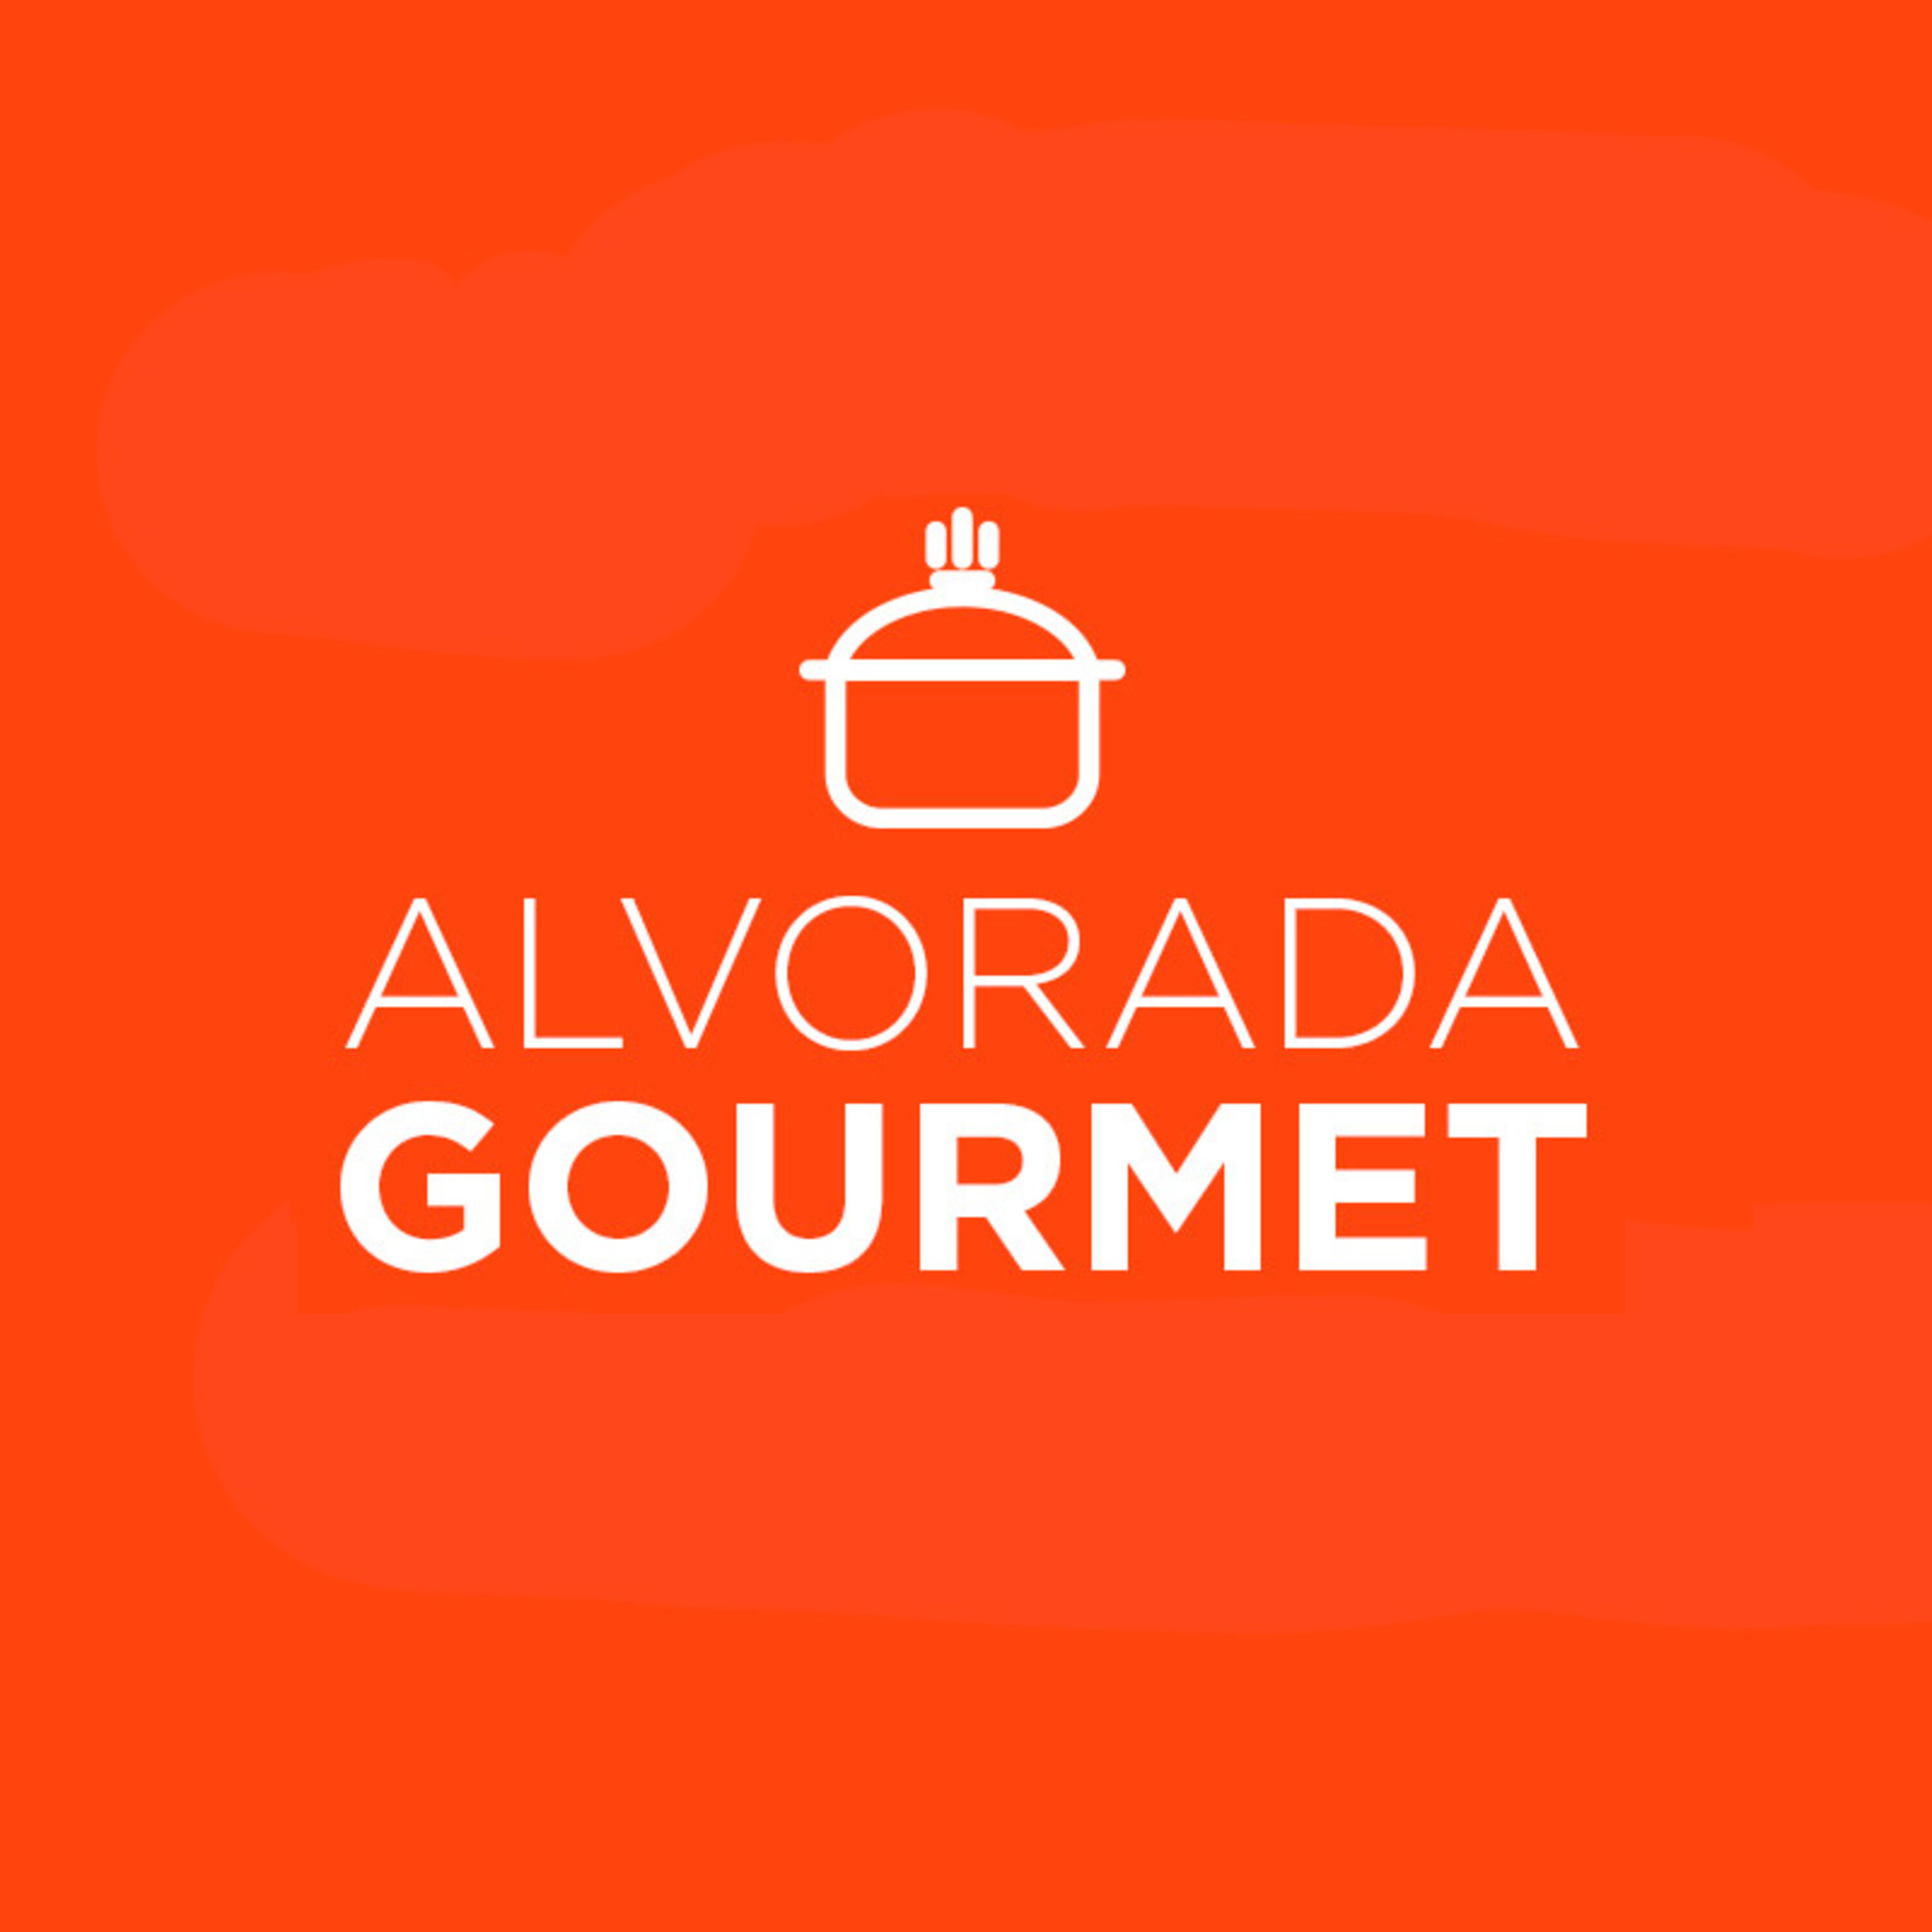 Alvorada Gourmet - Homenagem a Osvaldo Aranha